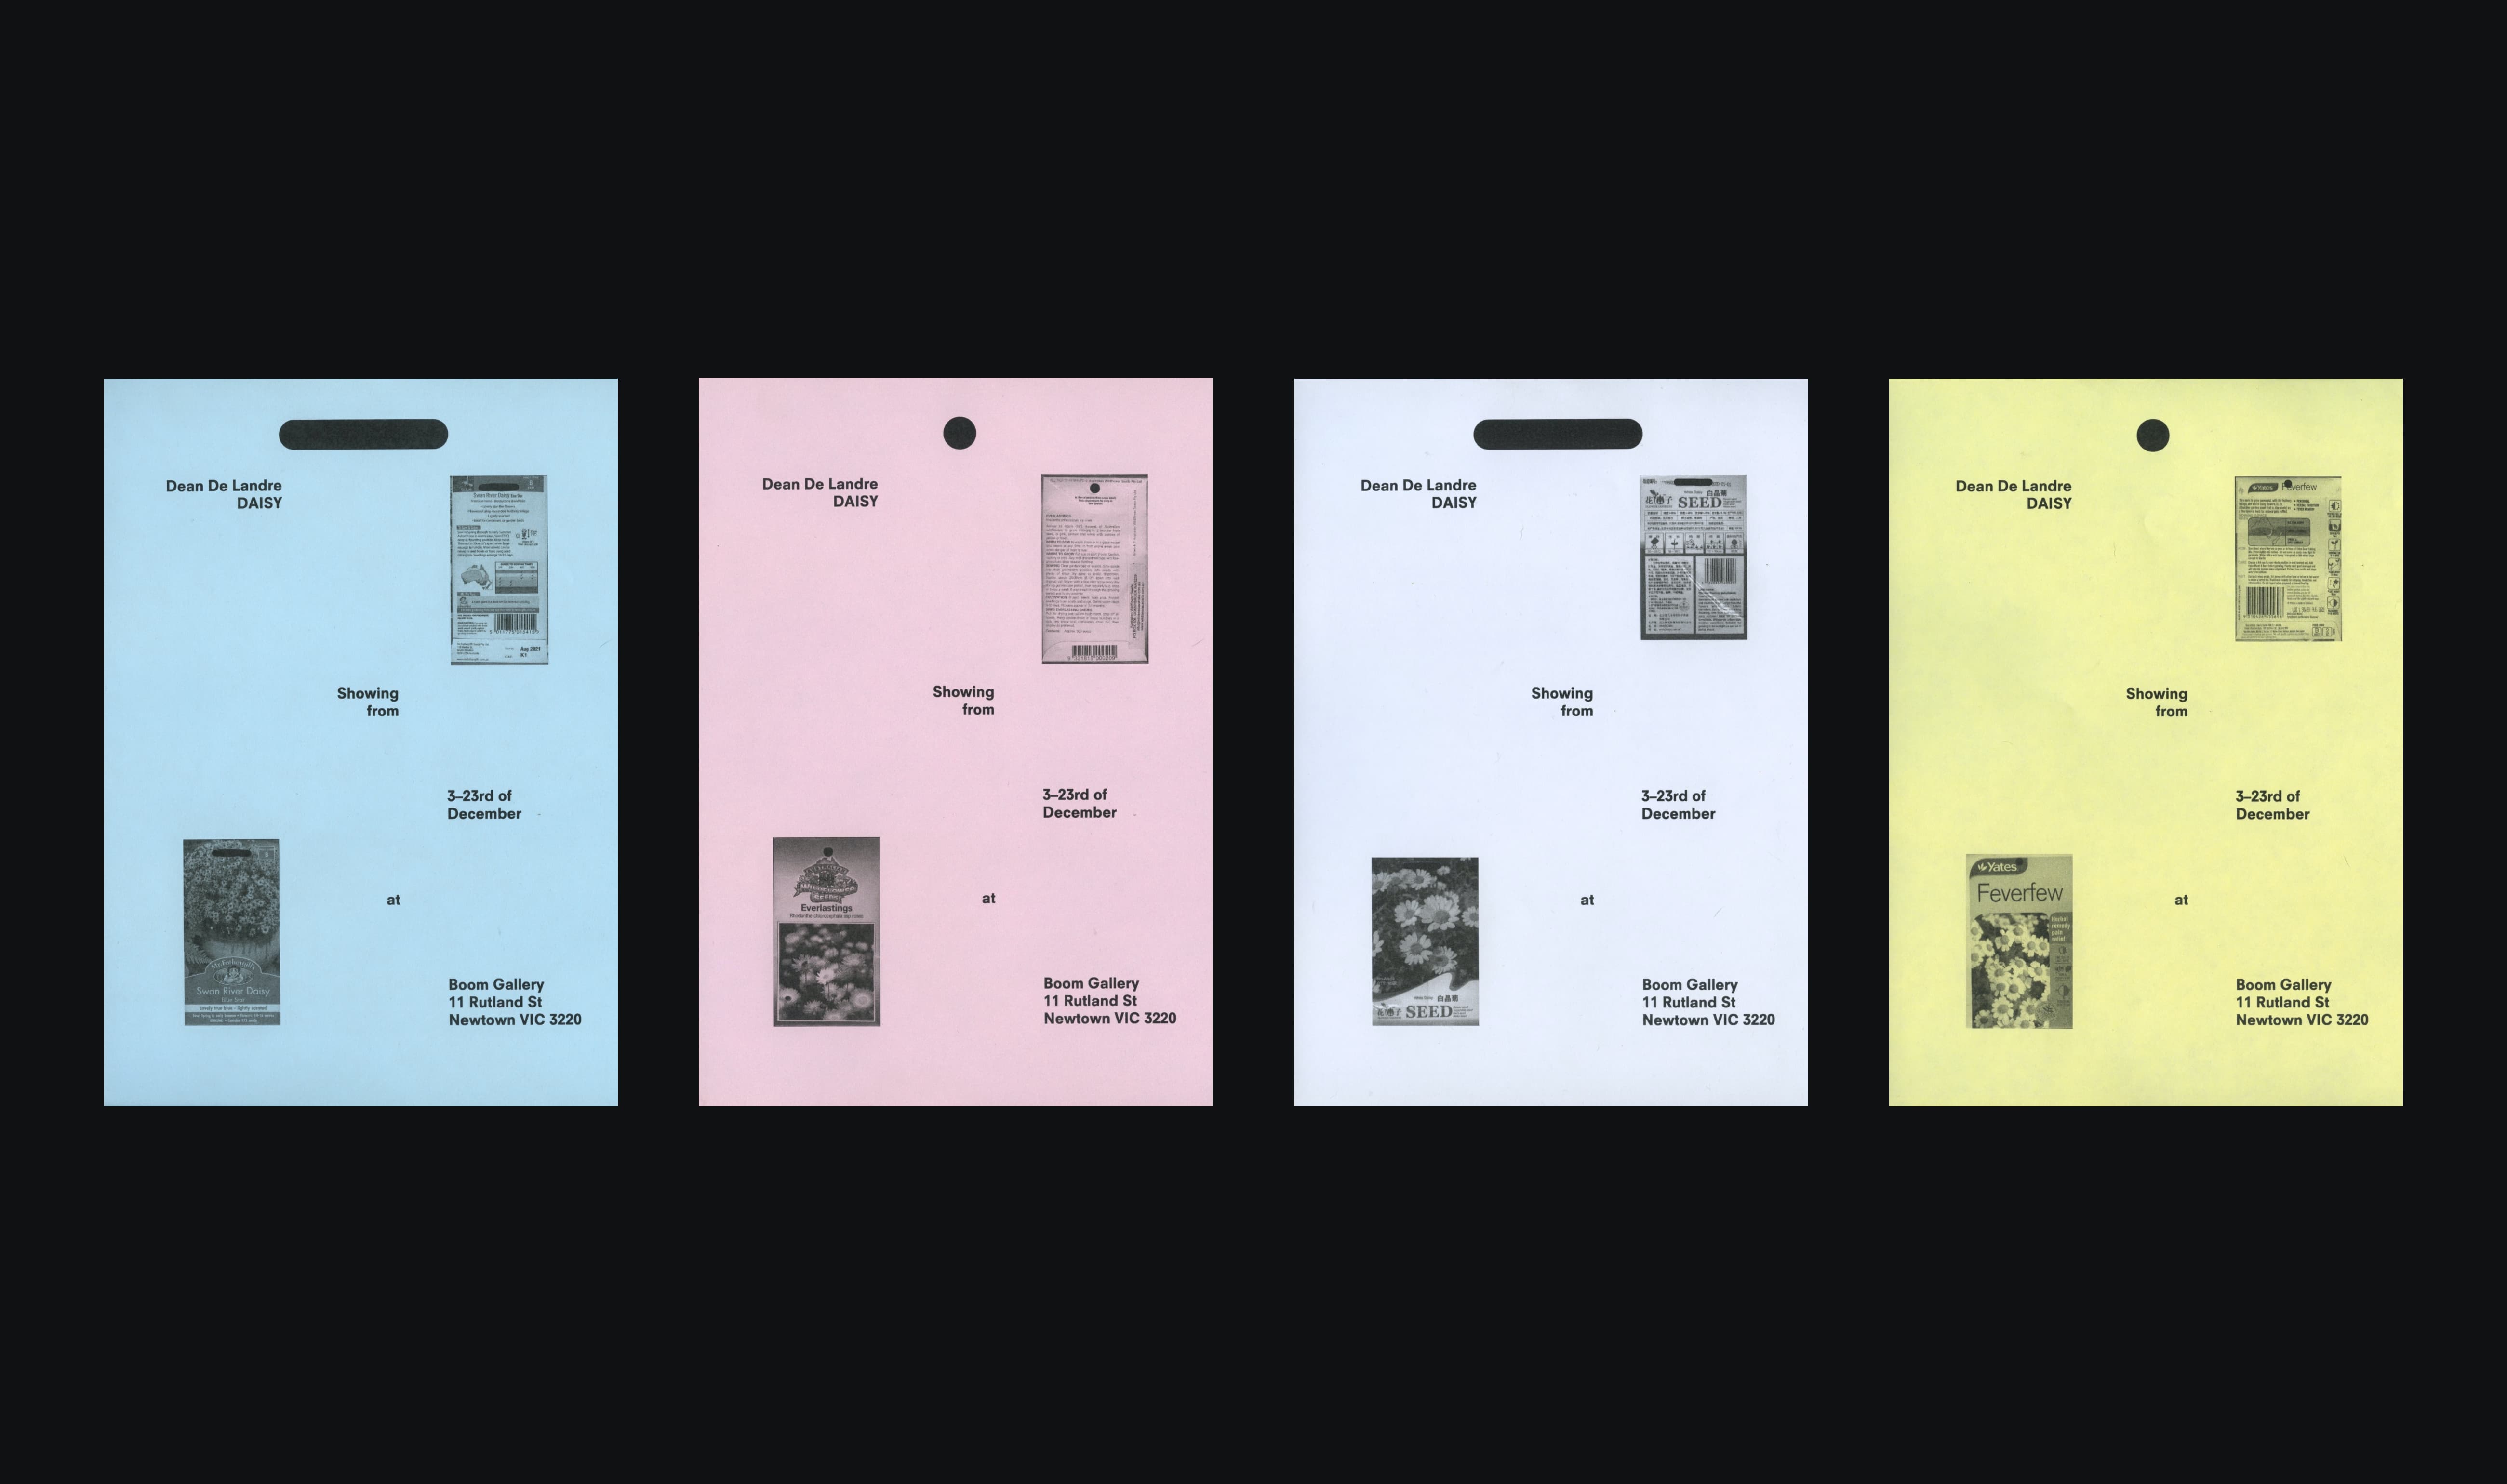 A selection of exhibition flyers for artist Dean De Landre.